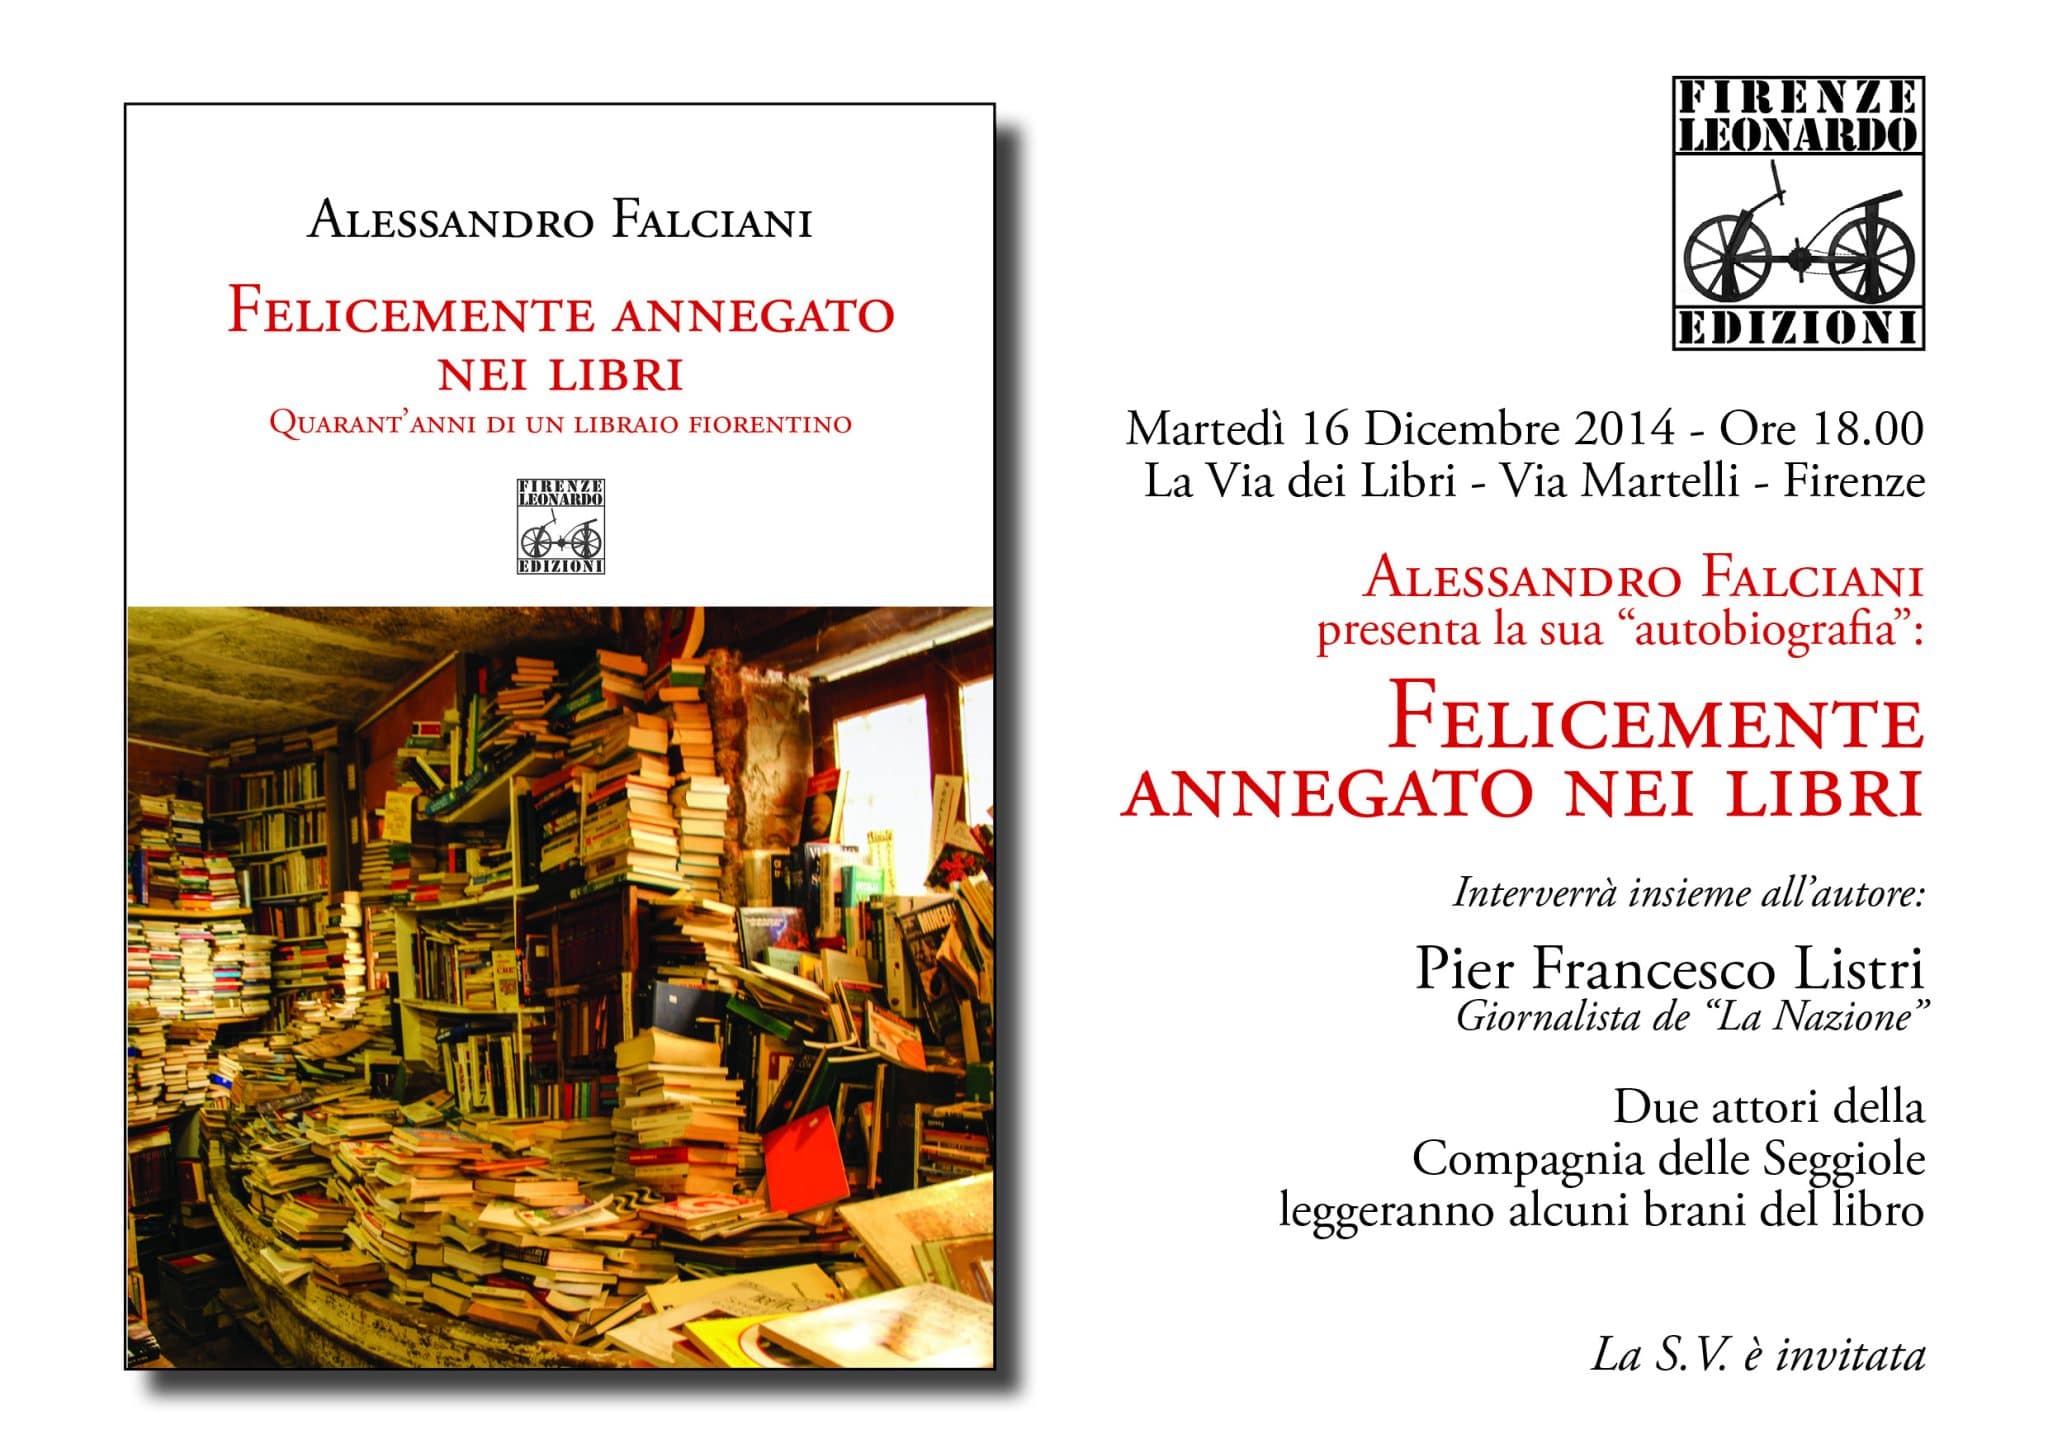 Invito 16 Dicembre 2014 La Via dei Libri Firenze Alessandro Falciani con Pier Francesco Listri Firenze Leonardo Edizioni 2